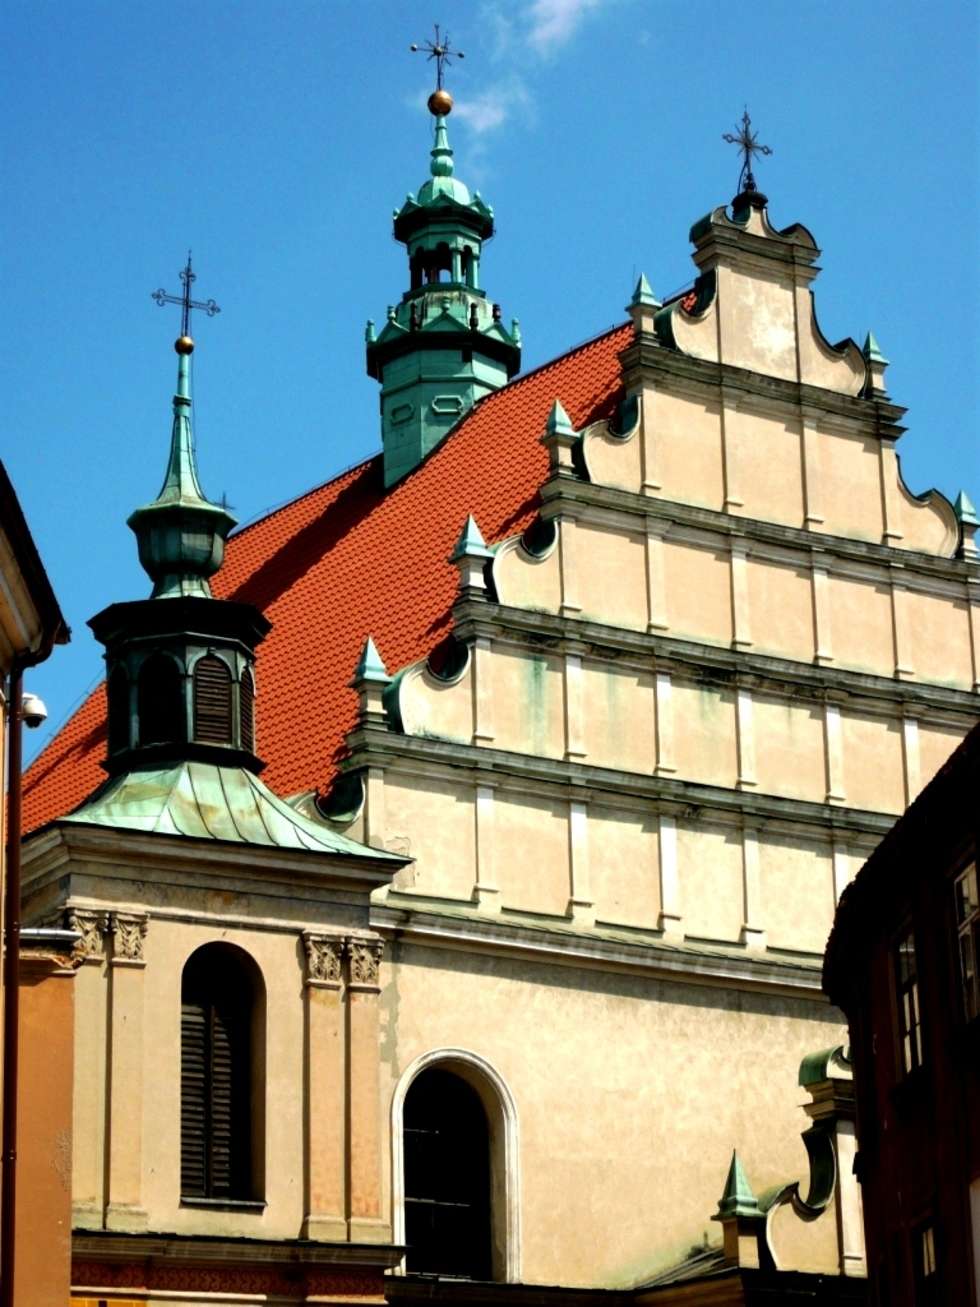  Fasada kościoła Dominikanów w Lublinie